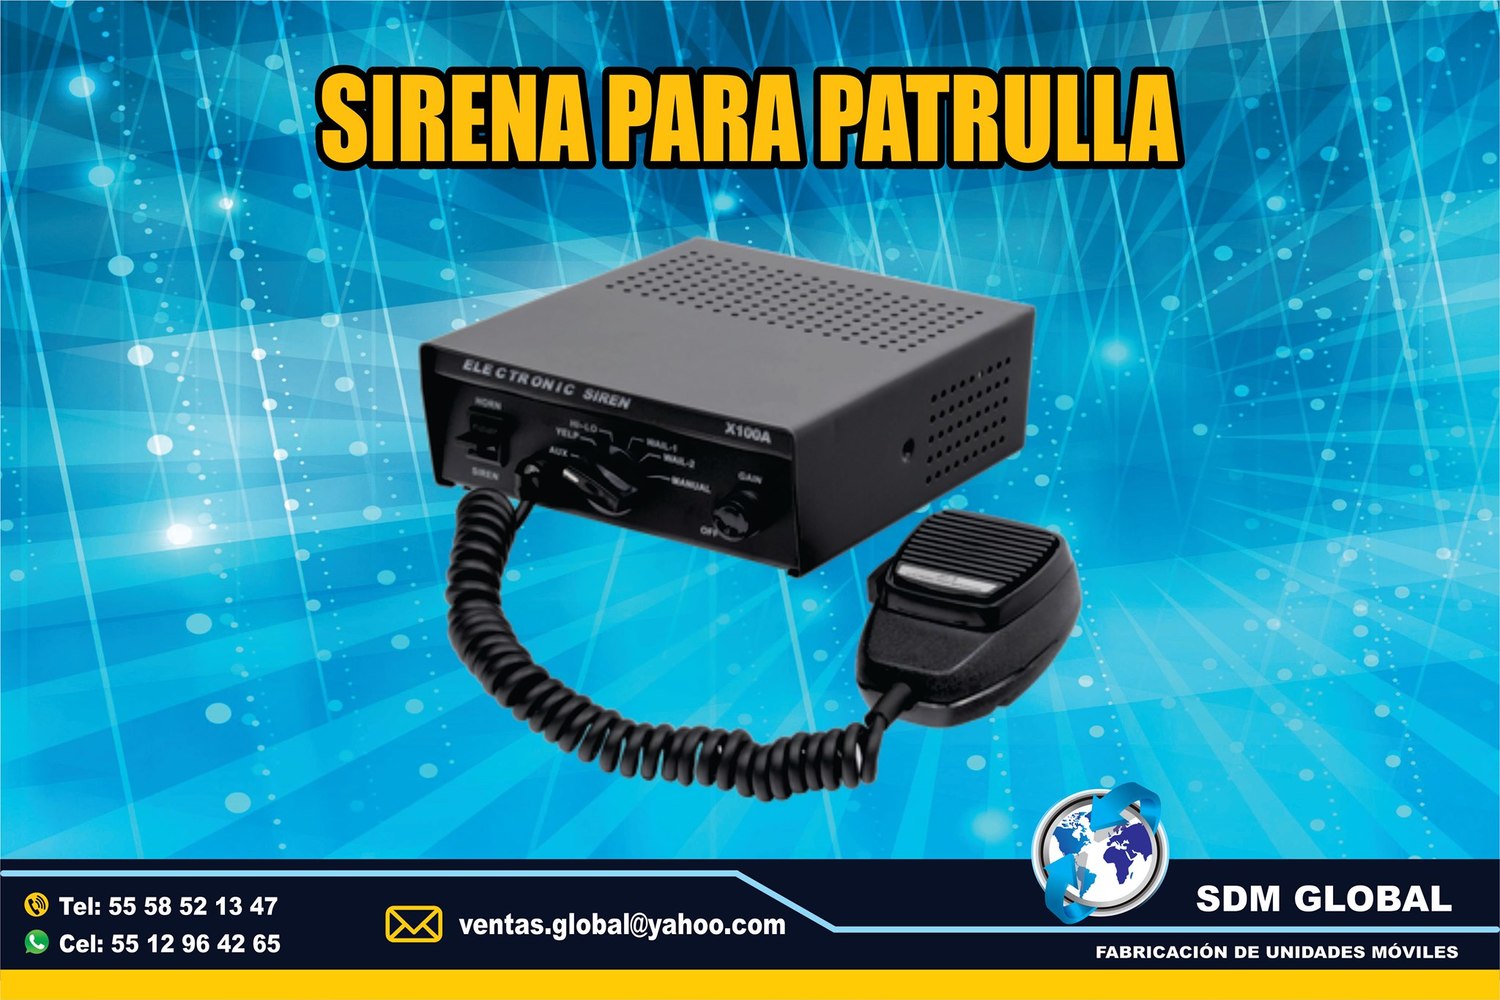 VENTA DE SIRENA MARCA Epcom System<br>